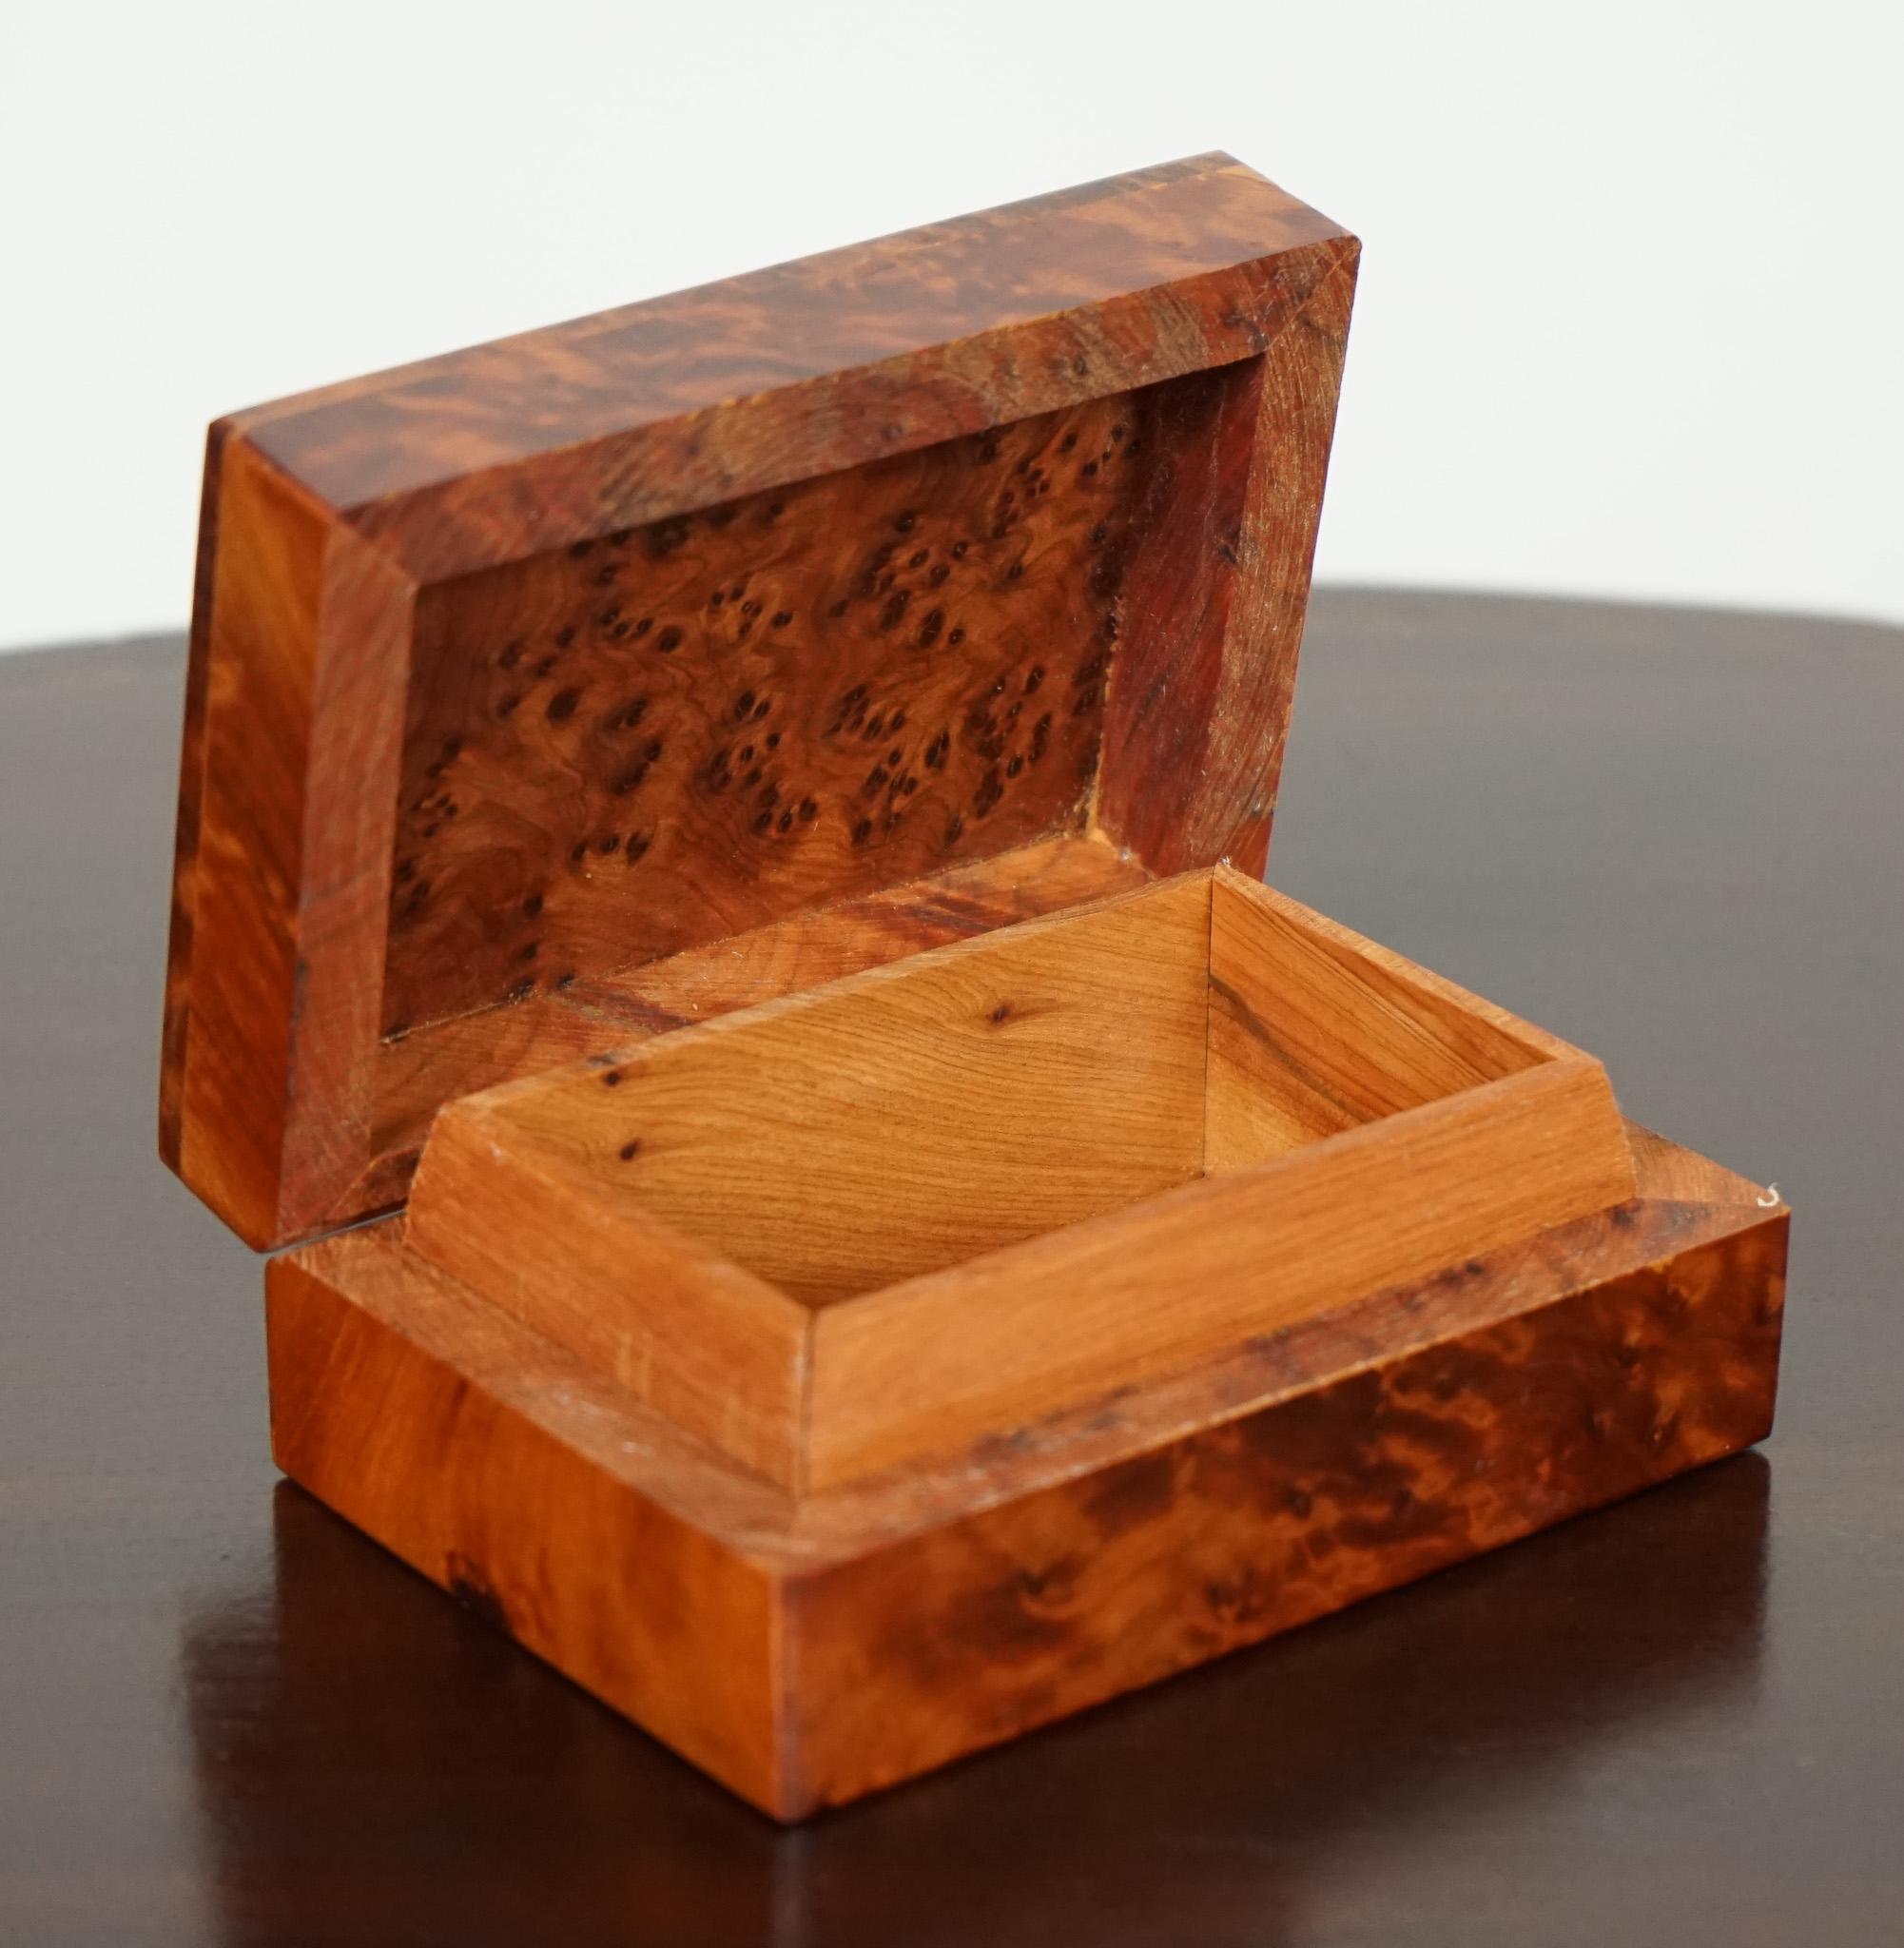 

Nous sommes ravis d'offrir à la vente cette petite boîte en bois de ronce vintage.

Une belle boîte en bois de ronce avec rangement. 

Veuillez examiner attentivement les photos pour vous rendre compte de leur état avant d'acheter, car elles font